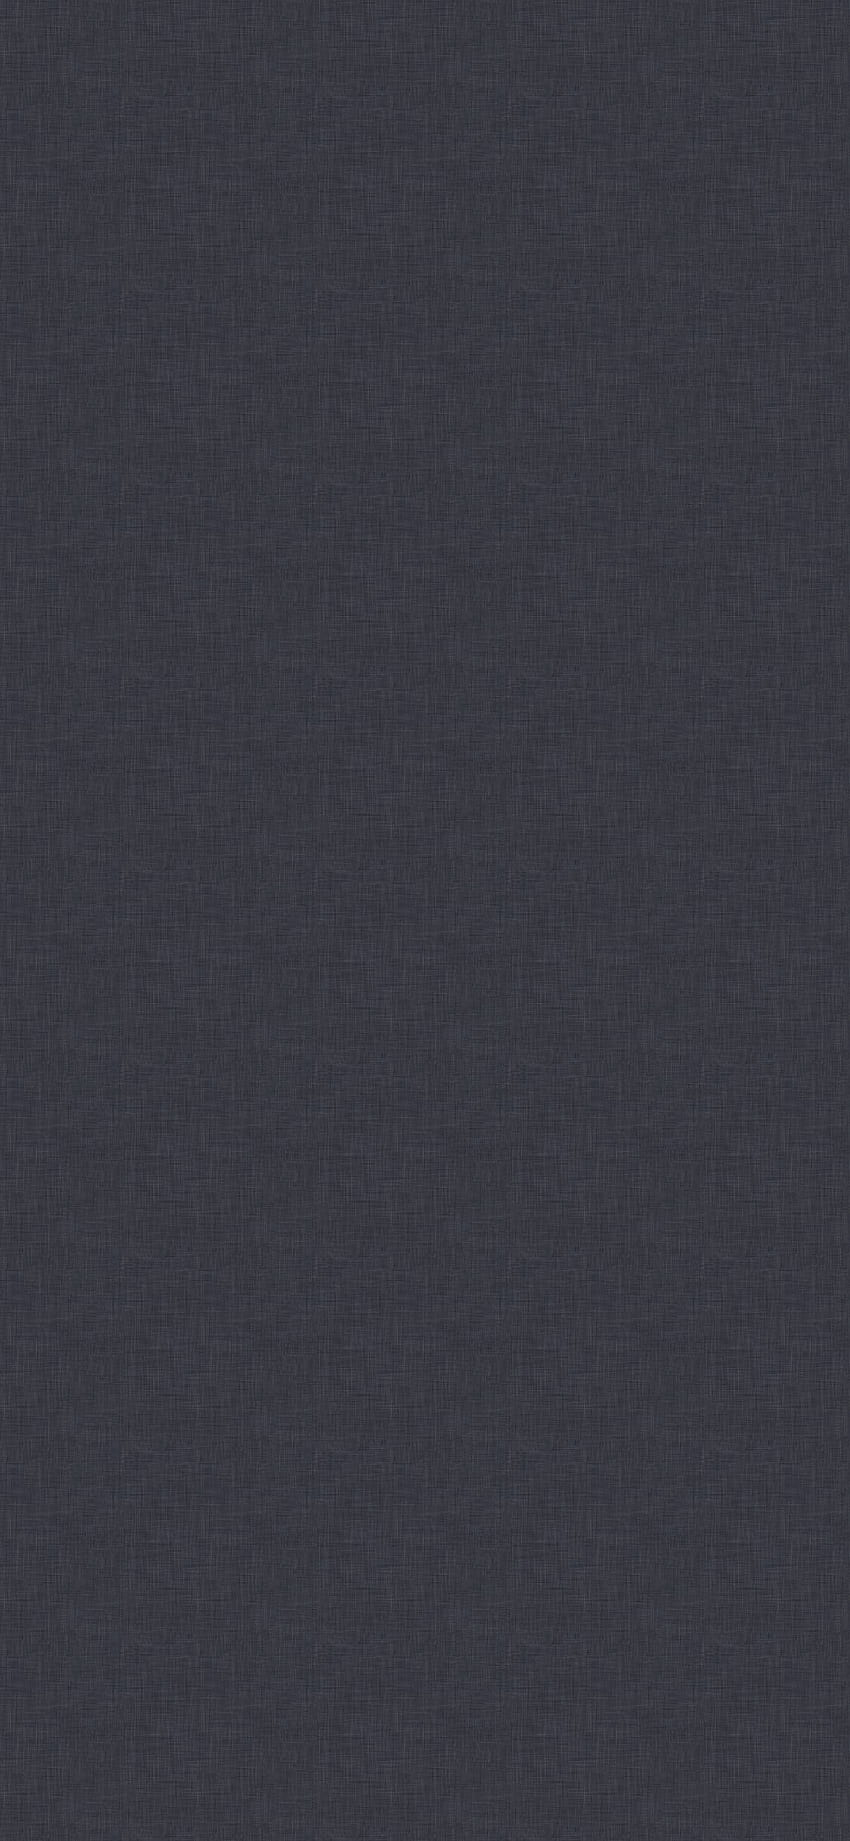 100 Grey Iphone Background s  Wallpaperscom